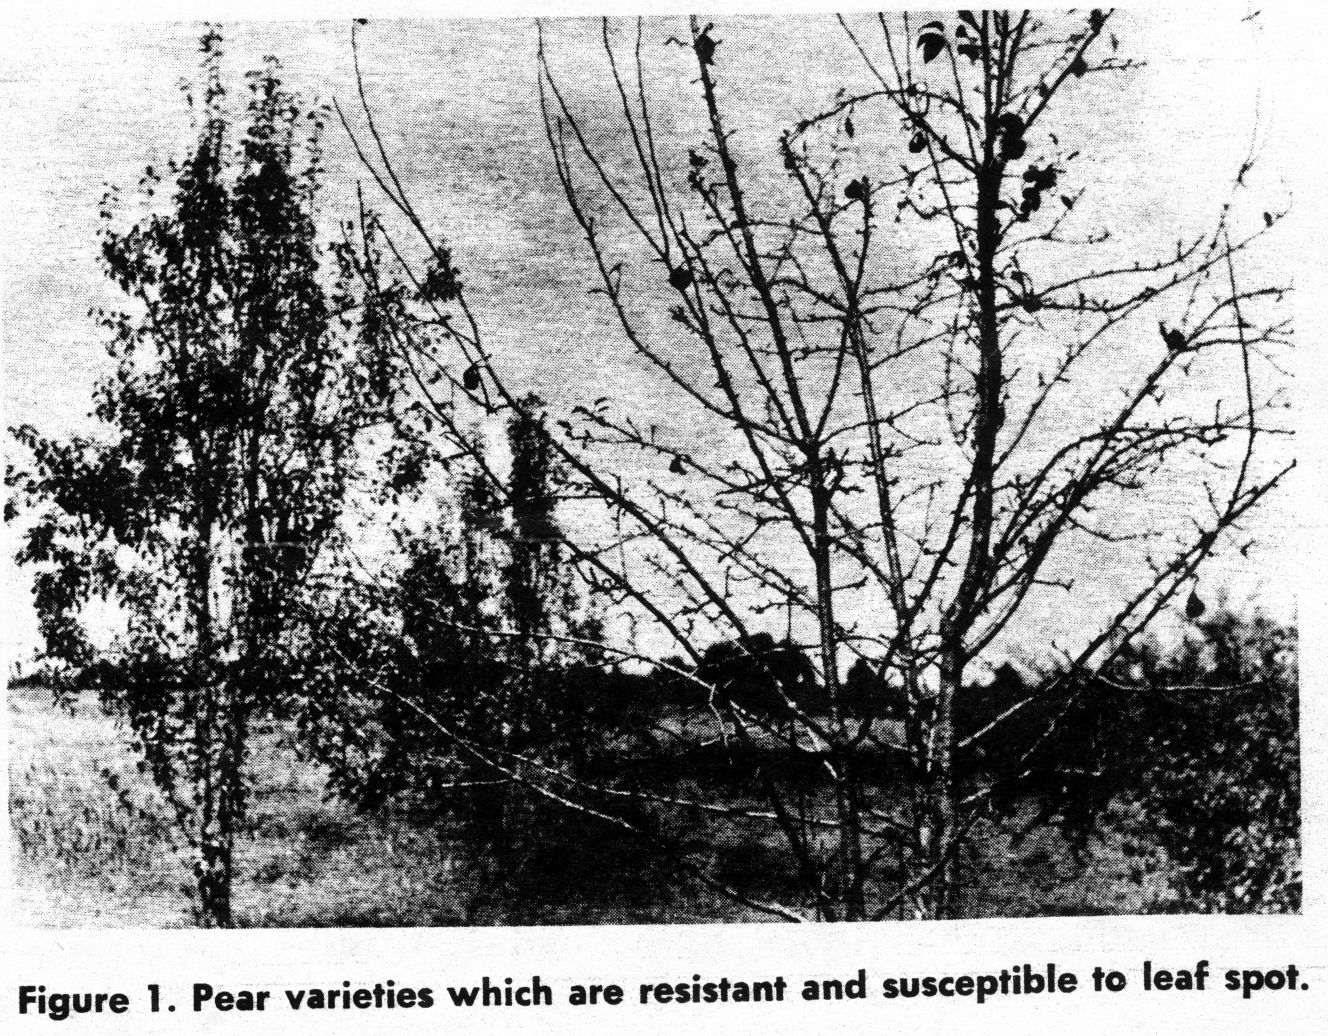 pear leafspot susceptibility range